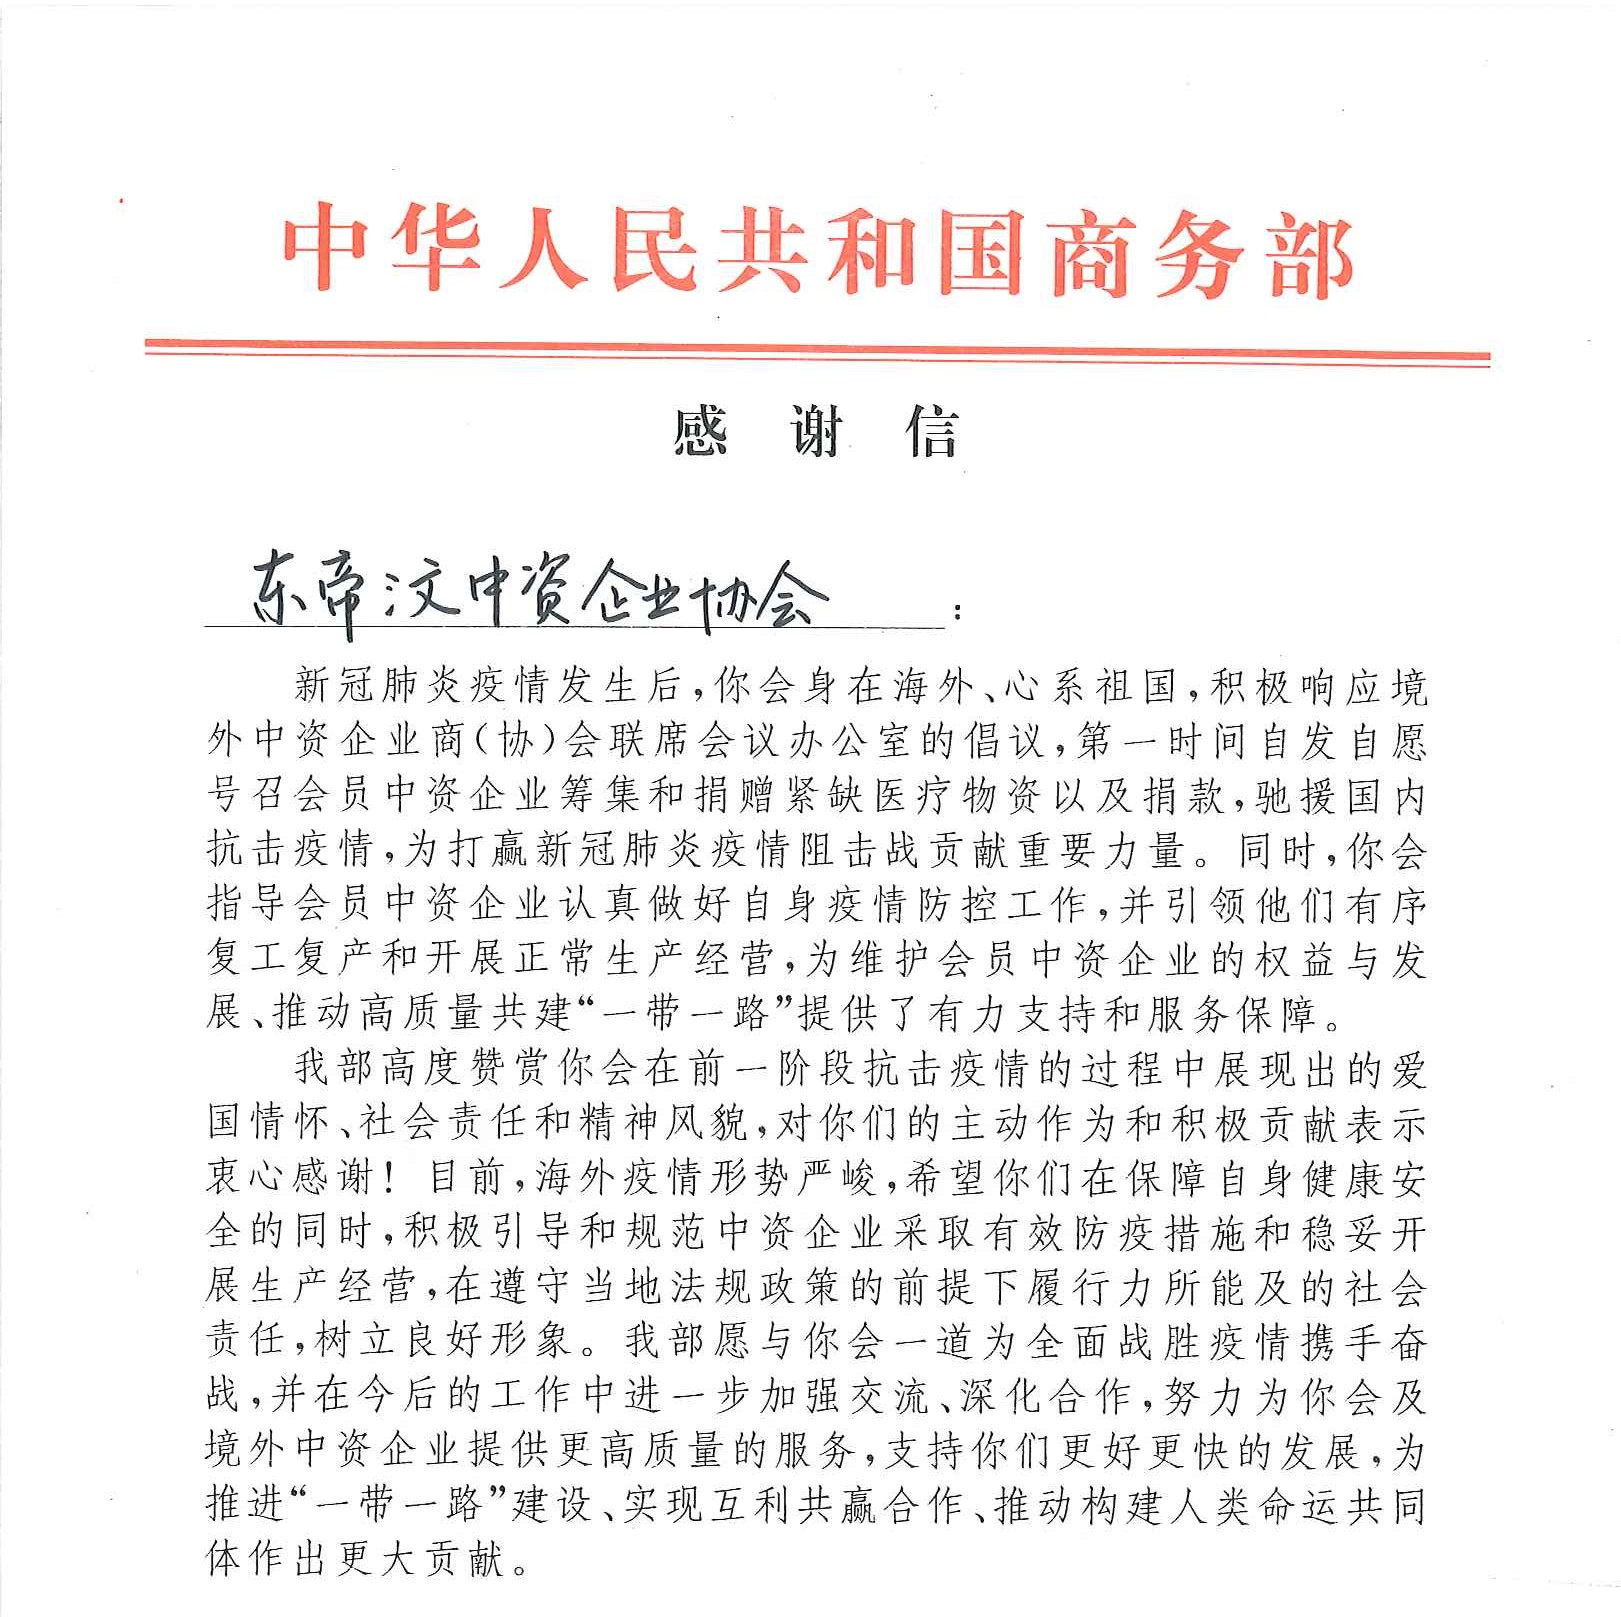 中华人民共和国商务部感谢信-截取印章以上部分